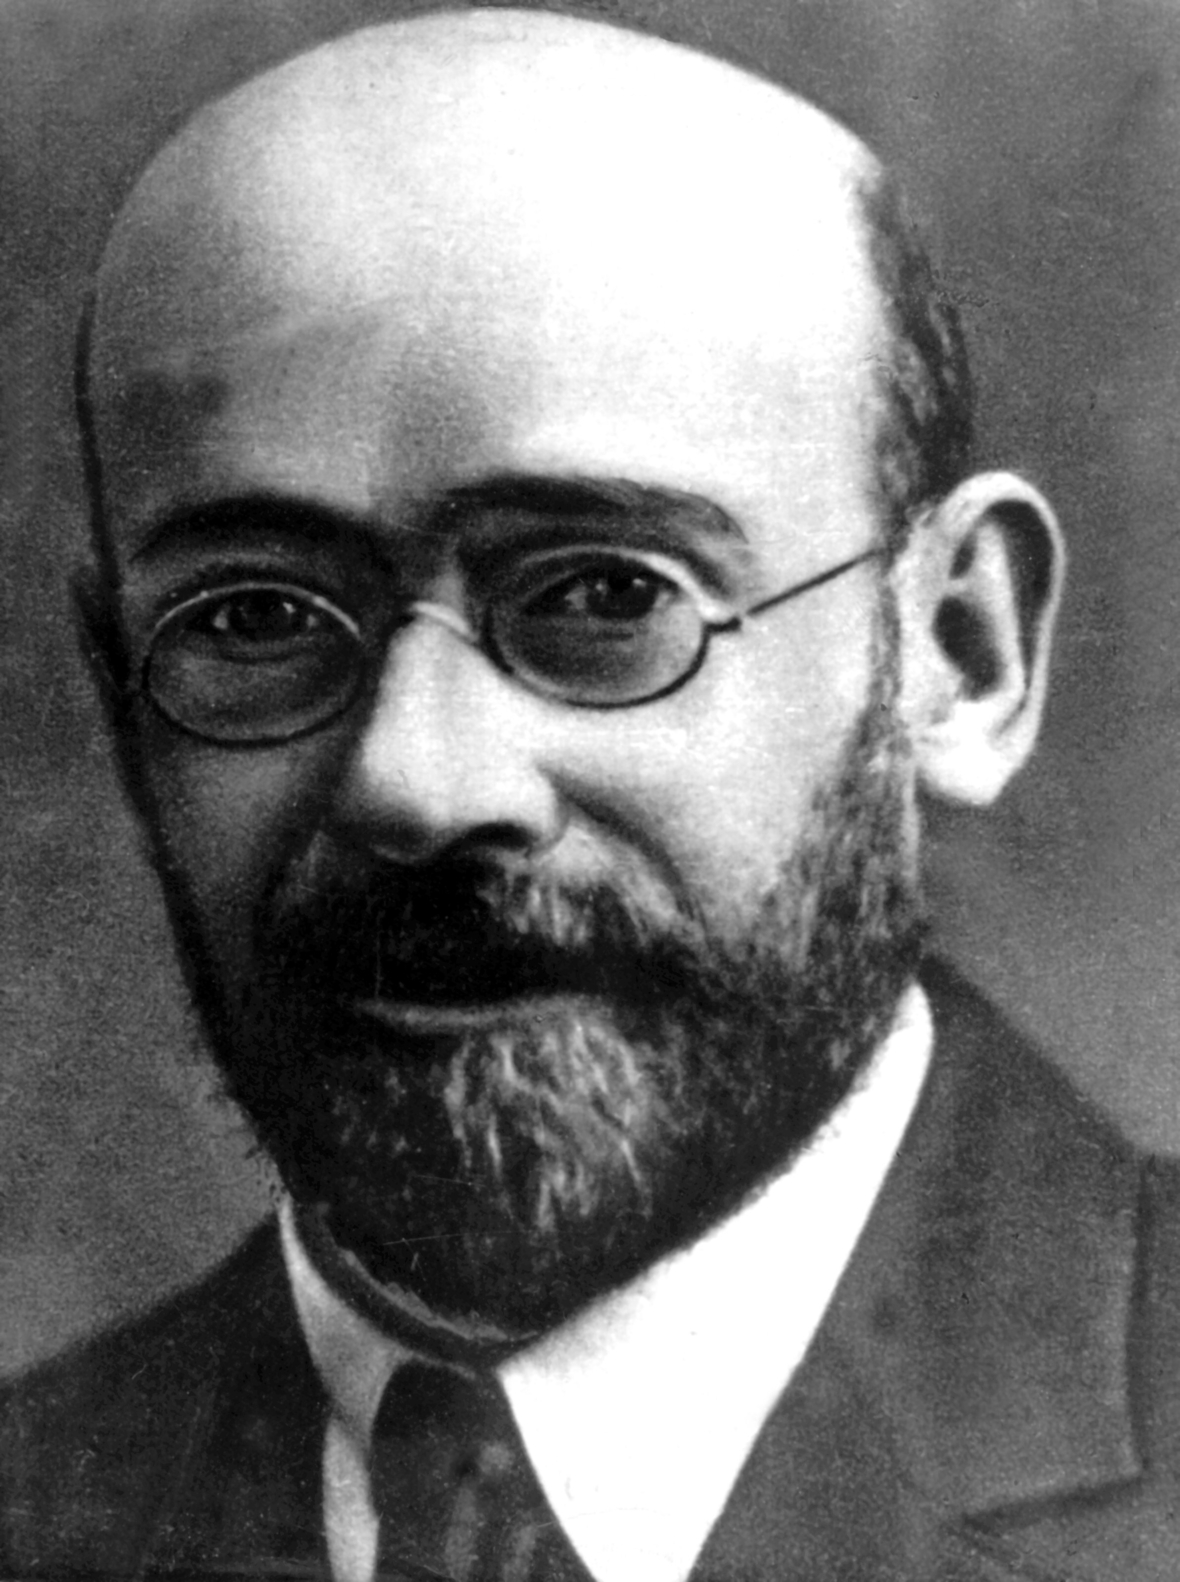 Janusz Korczak, Kinderarzt und Pädagoge. Es ist eine Aufnahme von 1911.